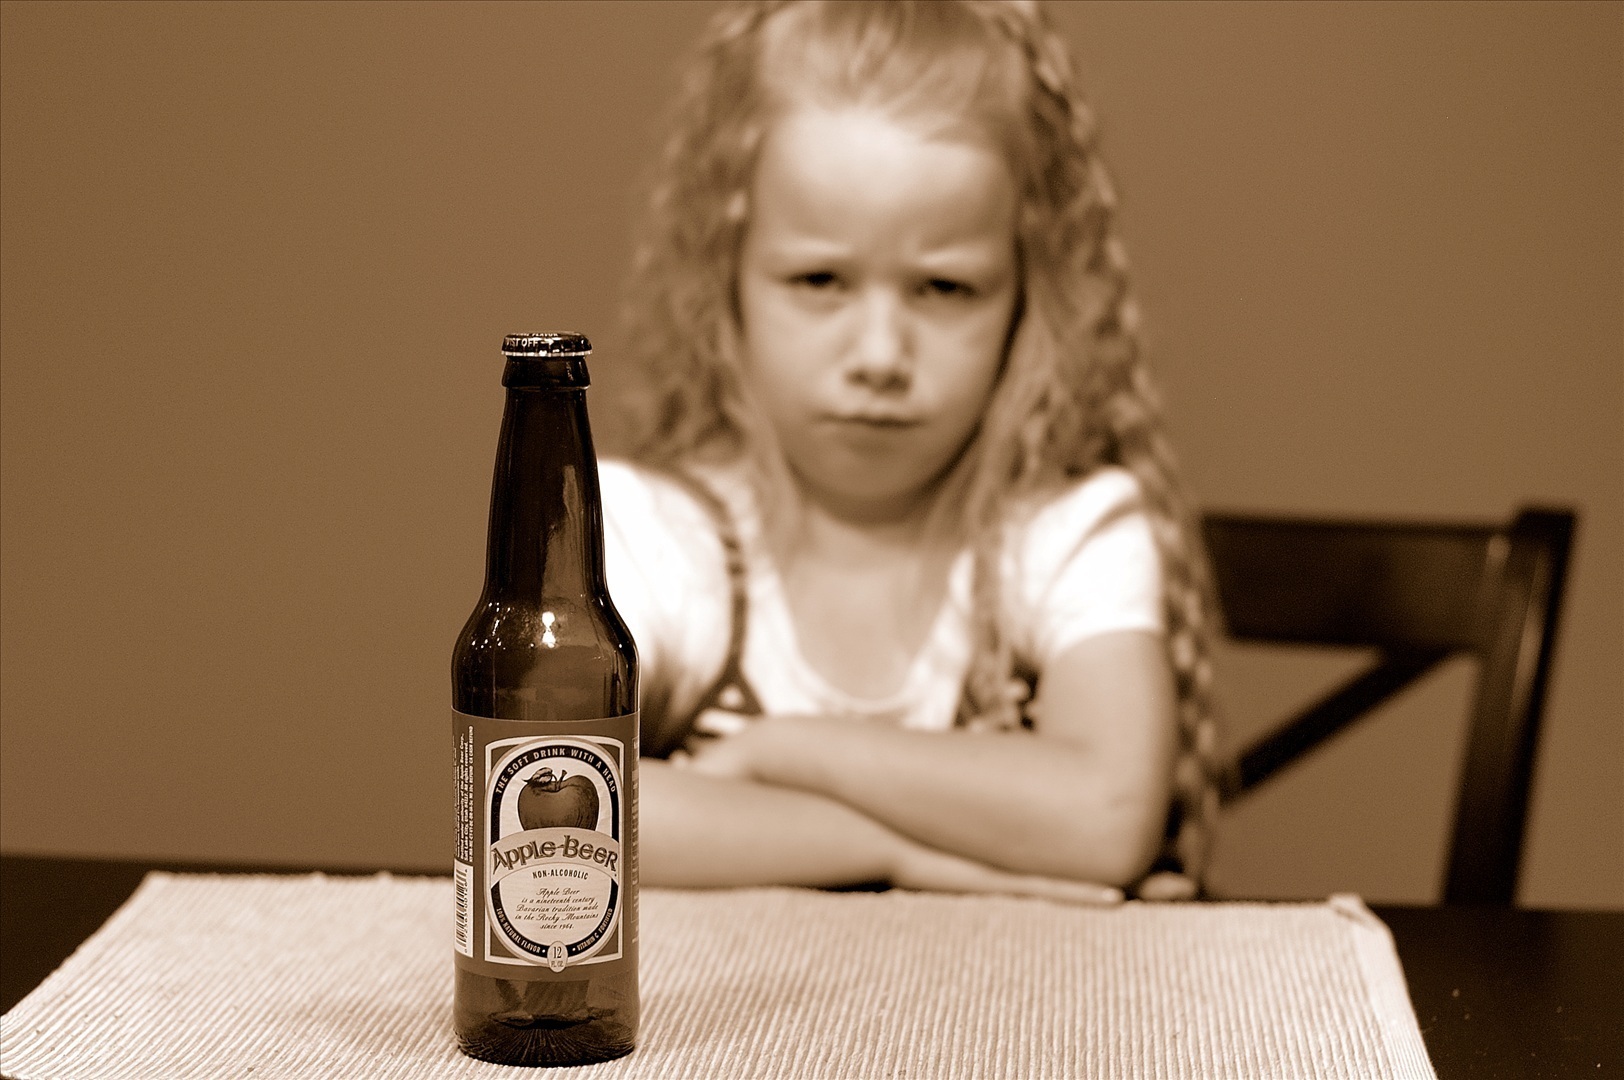 beer-kid.jpg